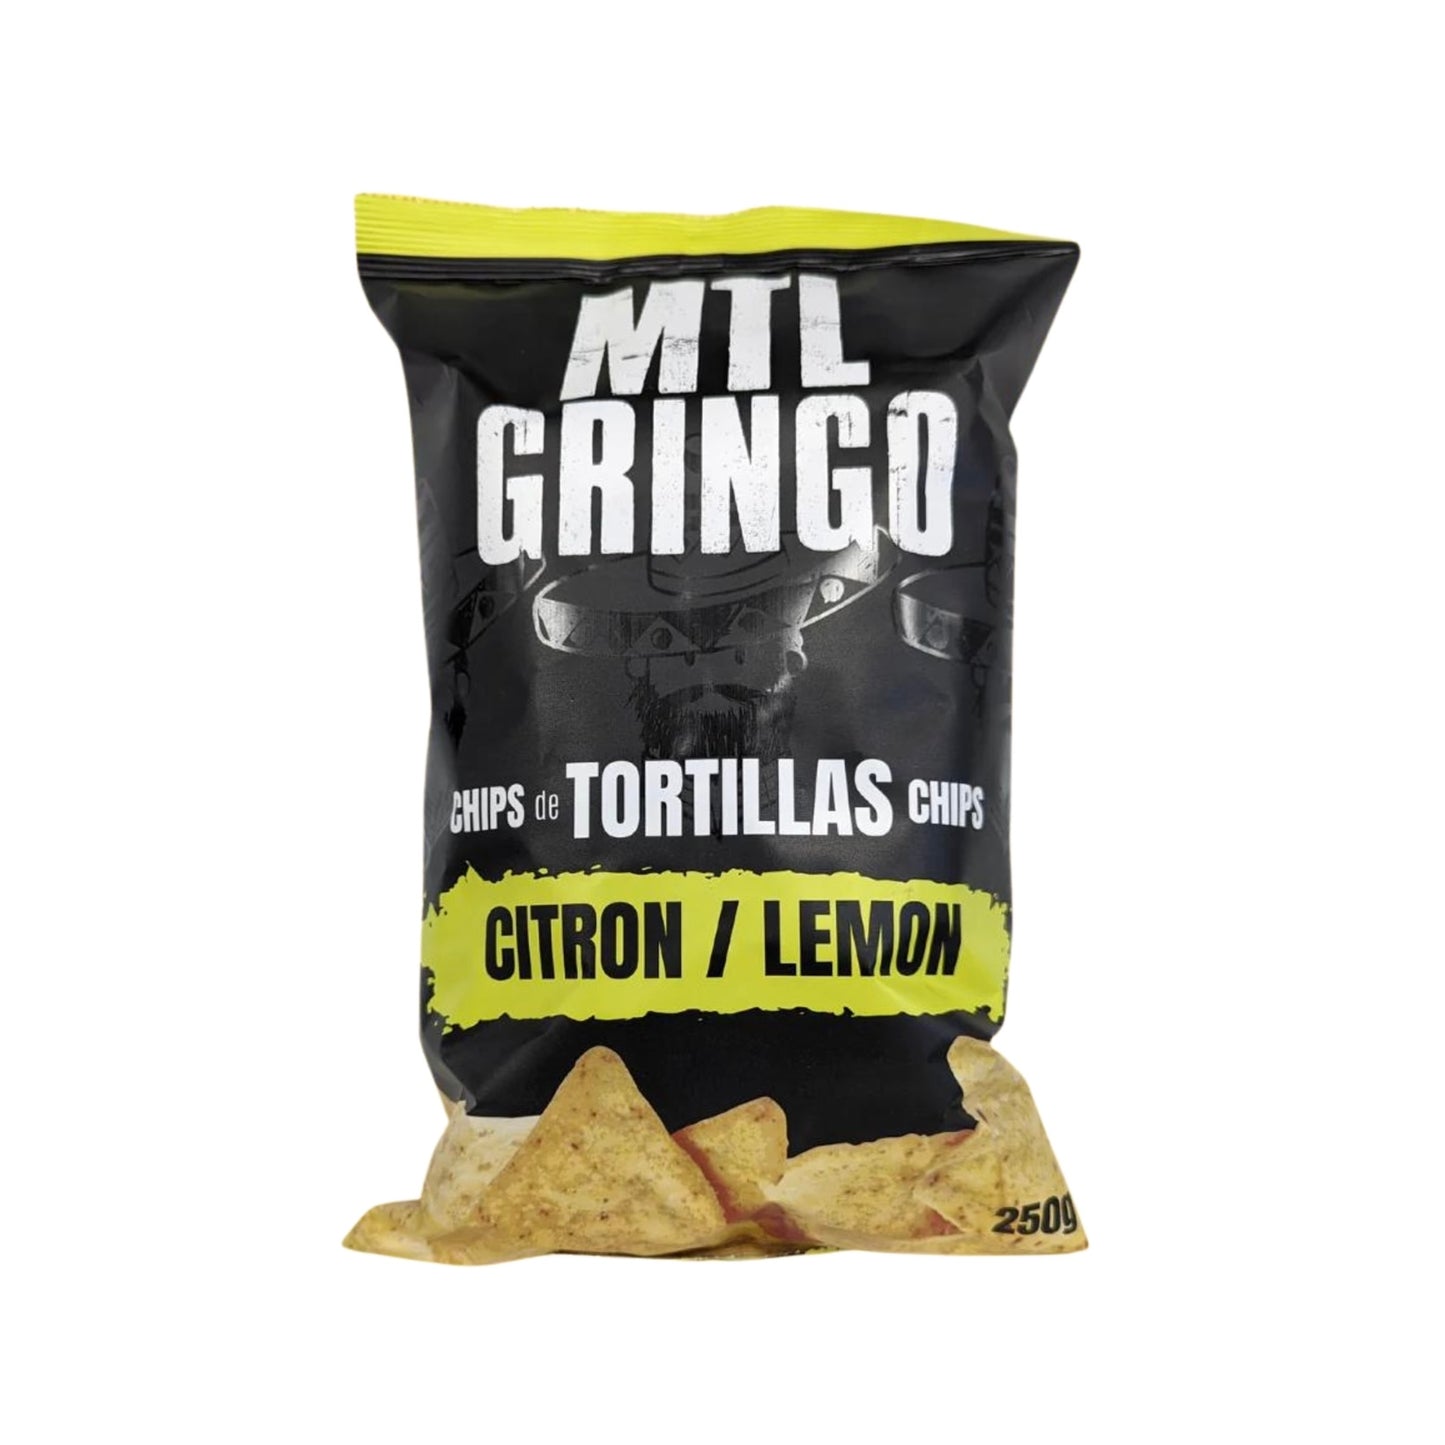 MTL Gringo - Chips de tortillas au citron